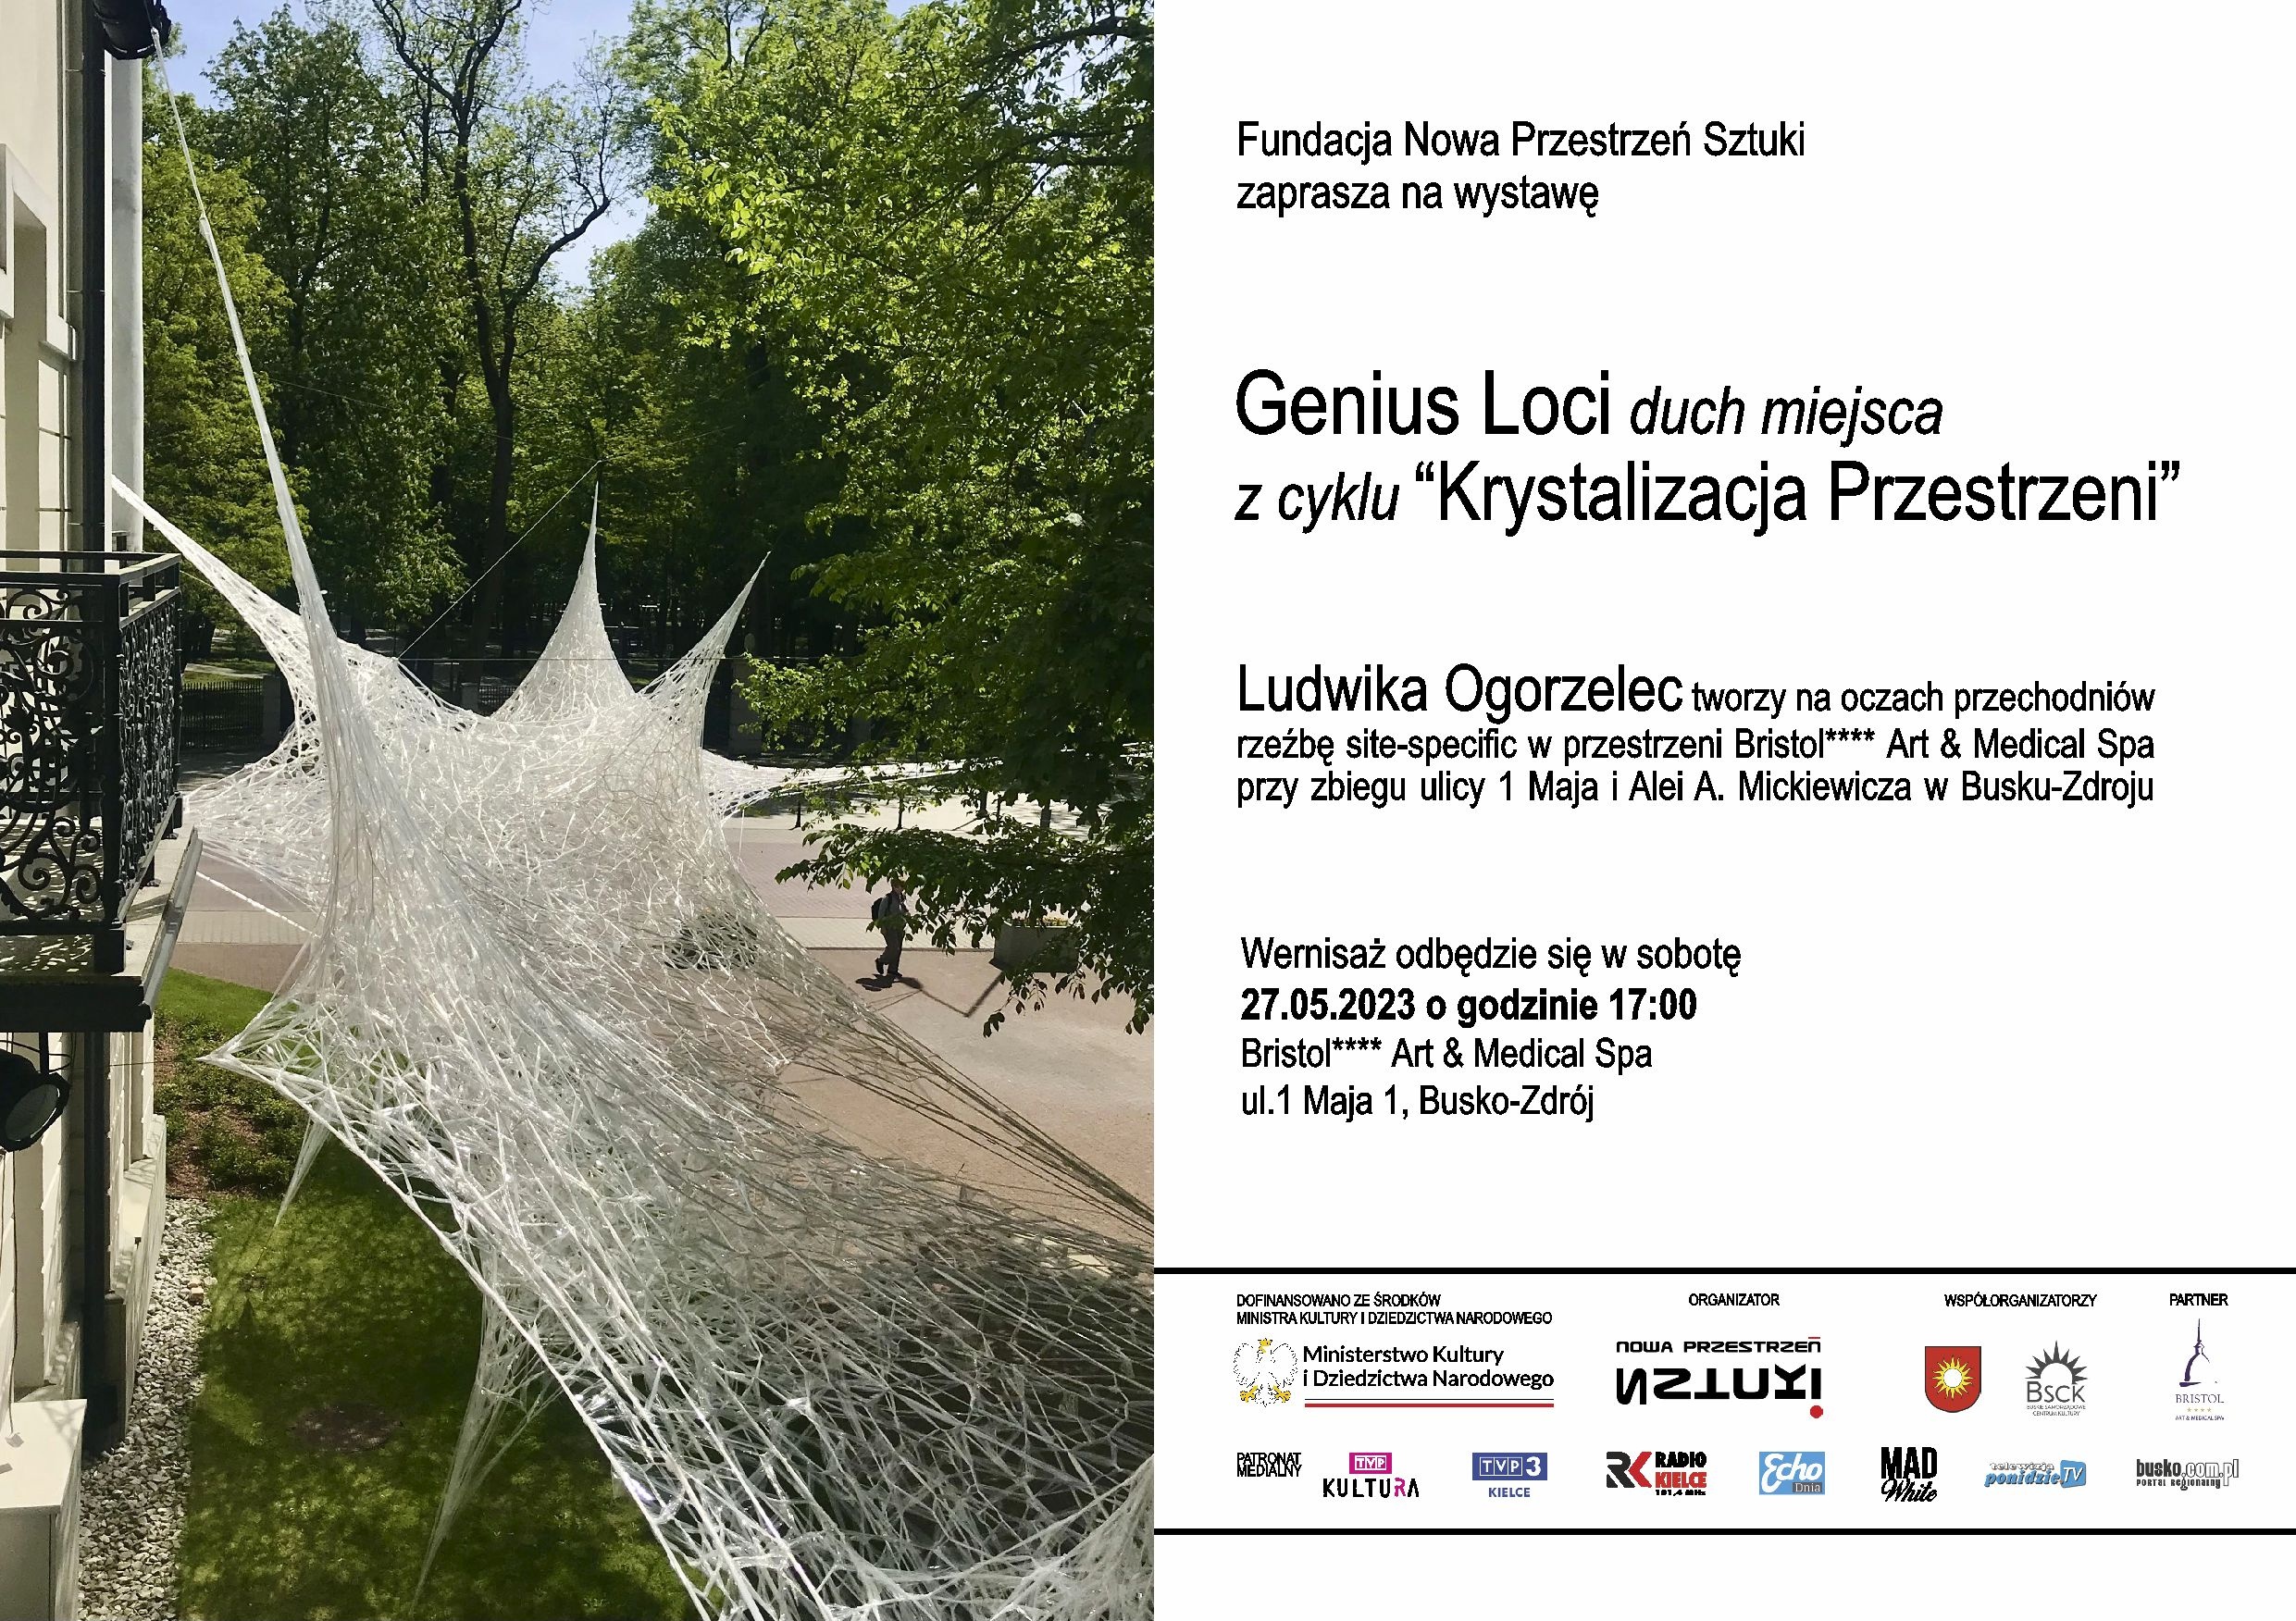 Ludwika Ogorzelec / Genius Loci – Duch Miejsca / zaproszenie